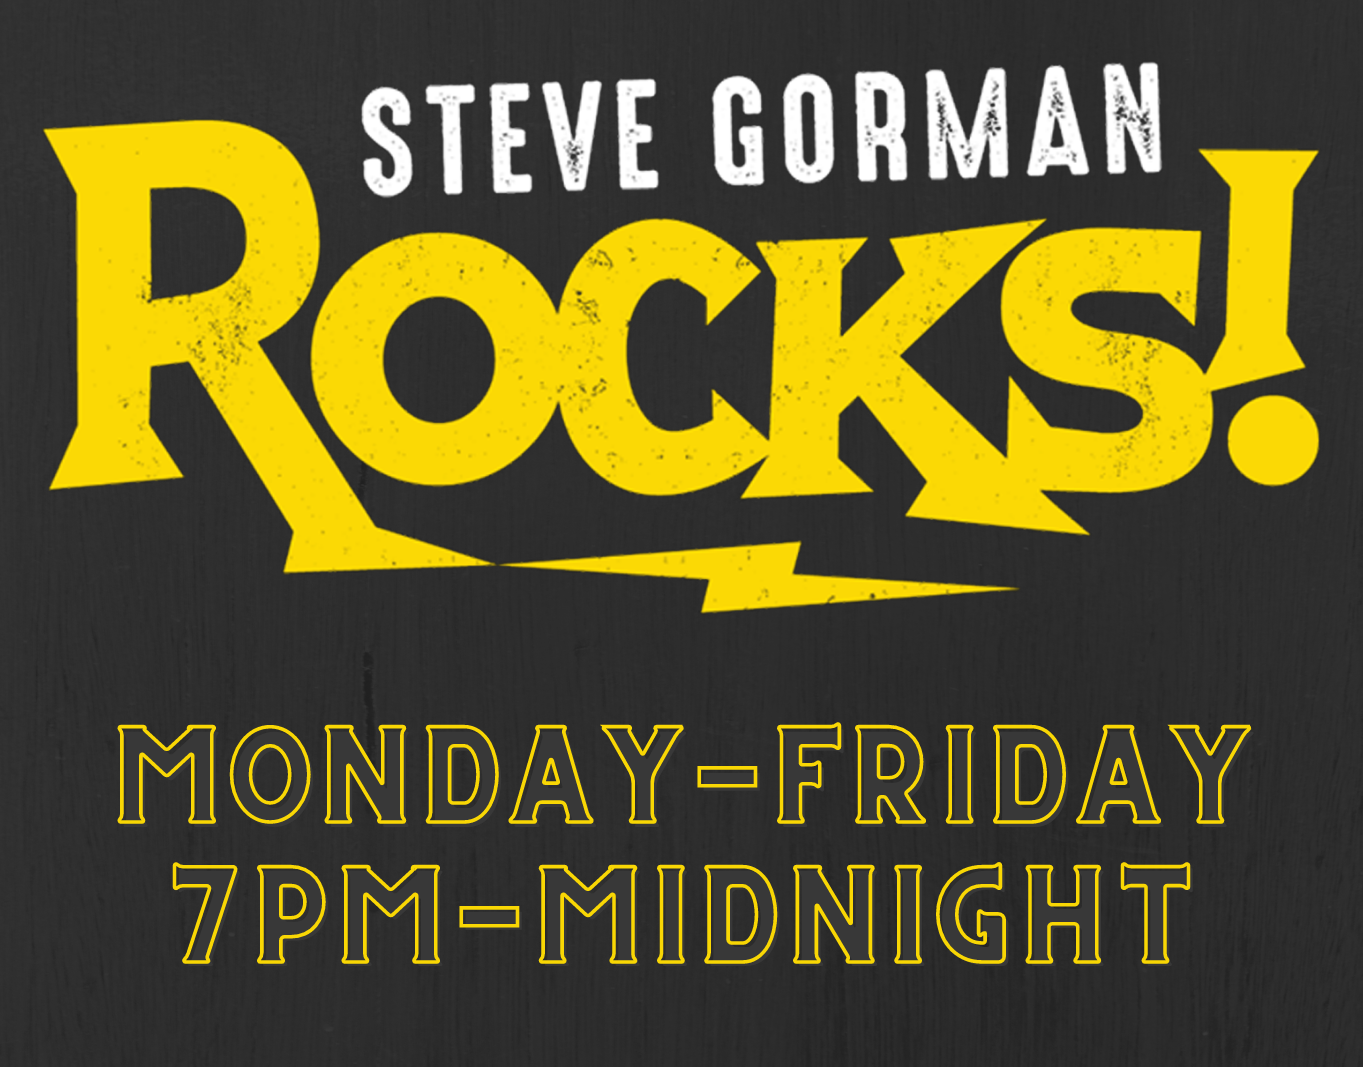 Steve Gorman ROCKS!